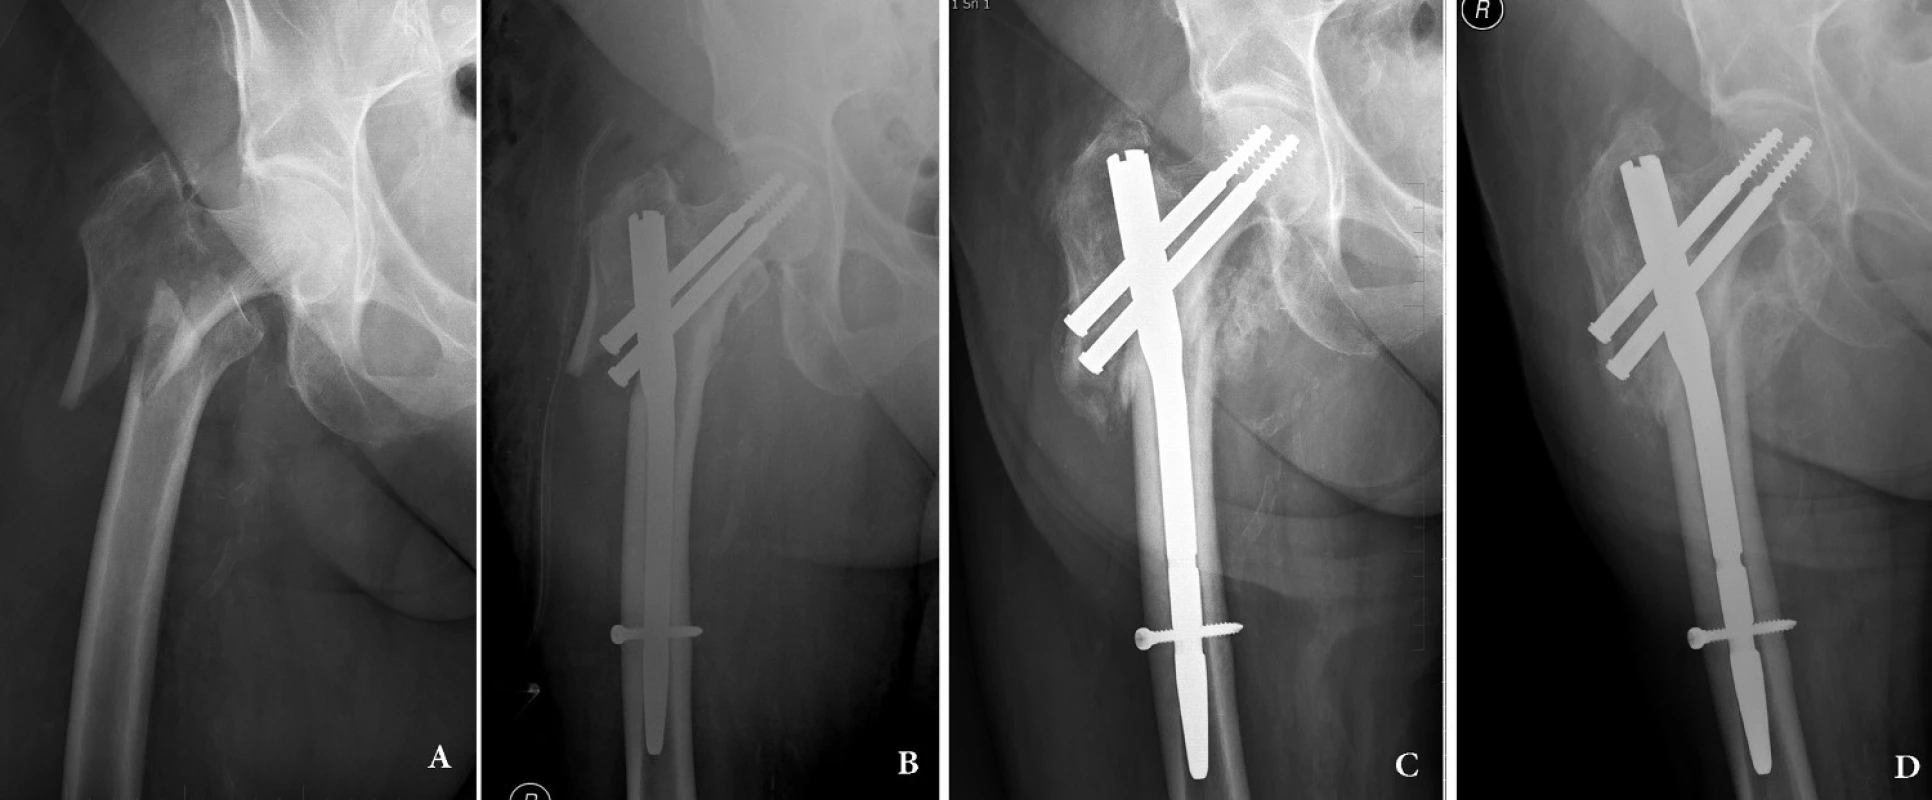 Intertrochanterická zlomenina 31–A3: a – úrazový snímek; b – osteosyntéza krátkým rekonstrukčním hřebem Medin, hřeb je zajištěn dynamicky; c – ve 3 měsících se zlomenina hojí svalkem, je patrné dosednutí fragmentů; d – stav 12 měsíců po operaci, zlomenina je zhojená.
Fig. 1: Intertrochanteric fracture 31 – A3: a – injury x-ray; b – internal fixation by short reconstruction nail Medin with dynamic distal locking; c – compression of the two main fragments along the axis of the nail and callus formation in the fracture line; d – 12 months after surgery, the fracture is healed.